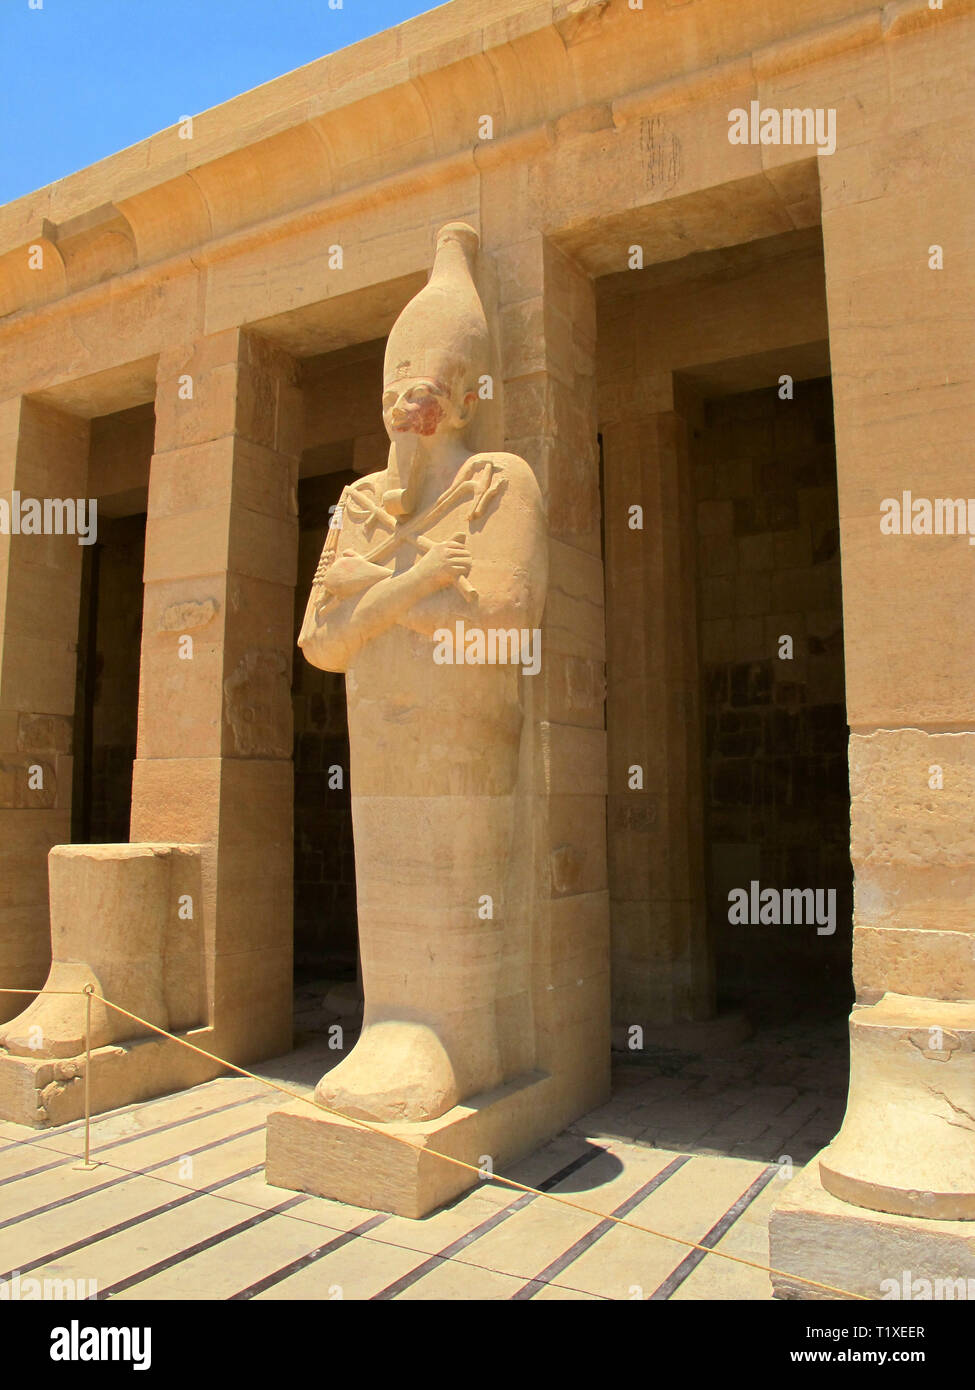 L'Egypte, Luxor - 07,26.2010 : Temple de la Reine Hatshepsup. Monuments historiques de l'antiquité Sites de l'Egypte Luxor Banque D'Images